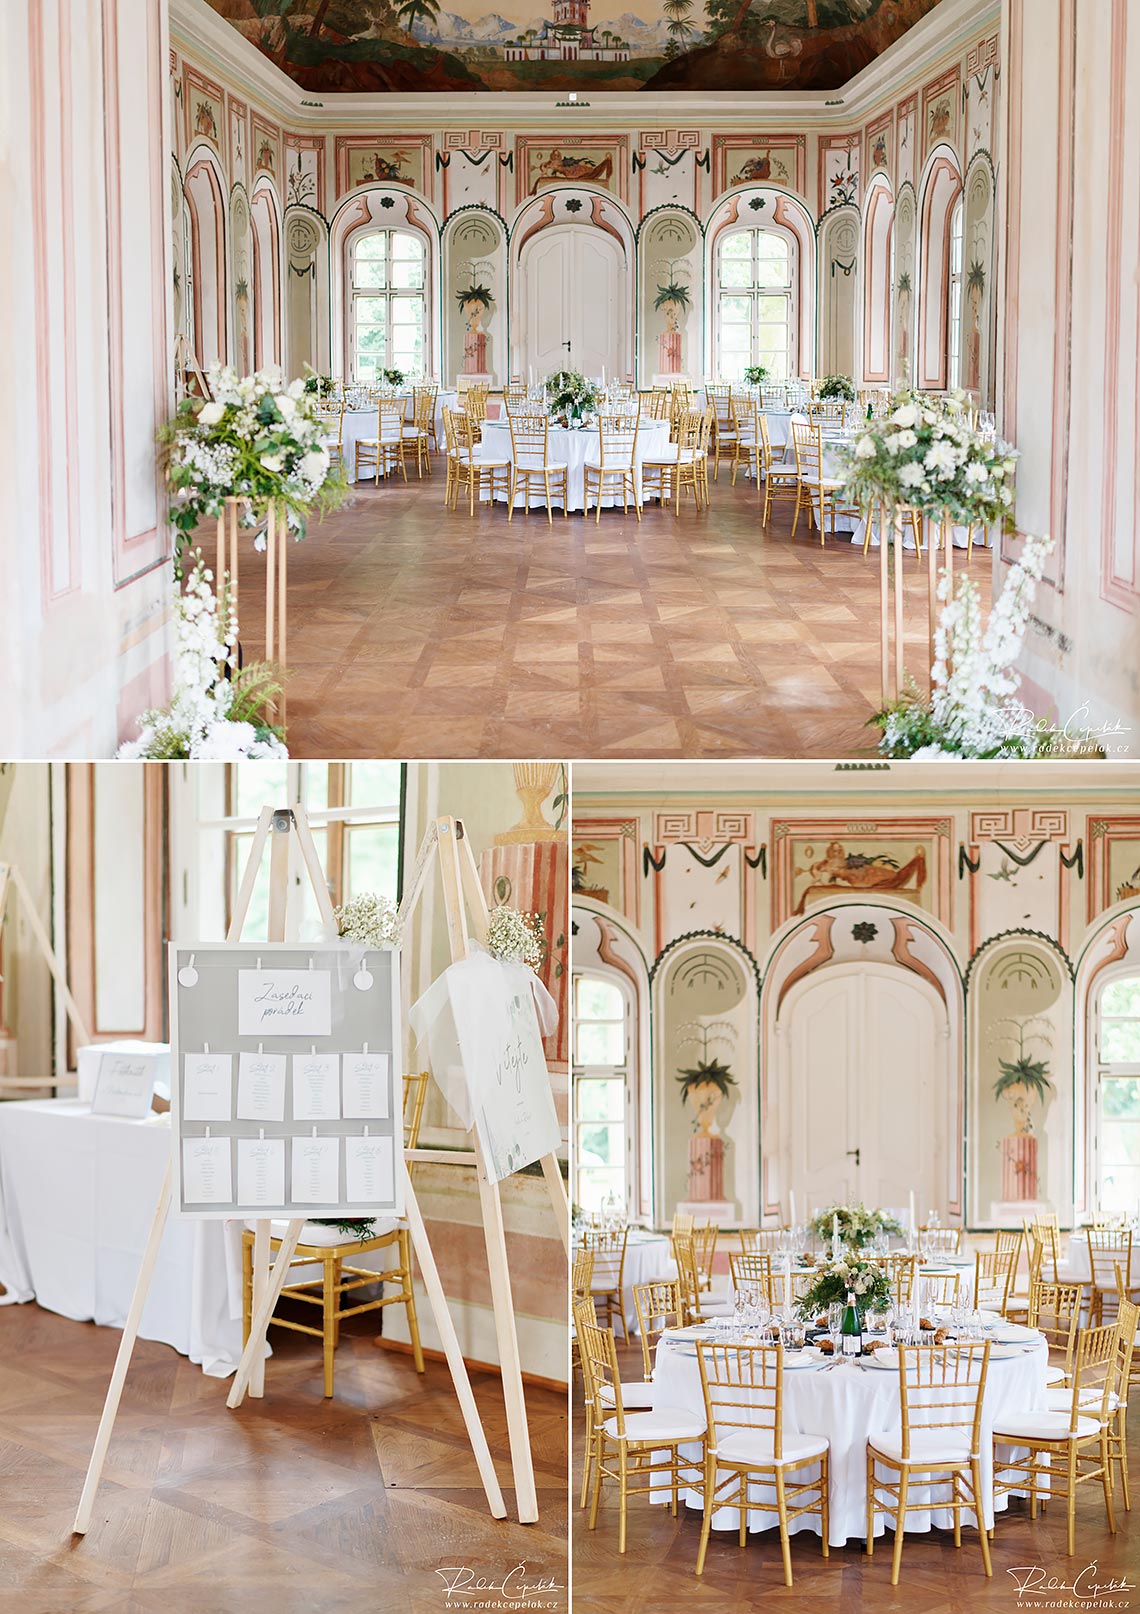 Bon Repos chateau wedding reception